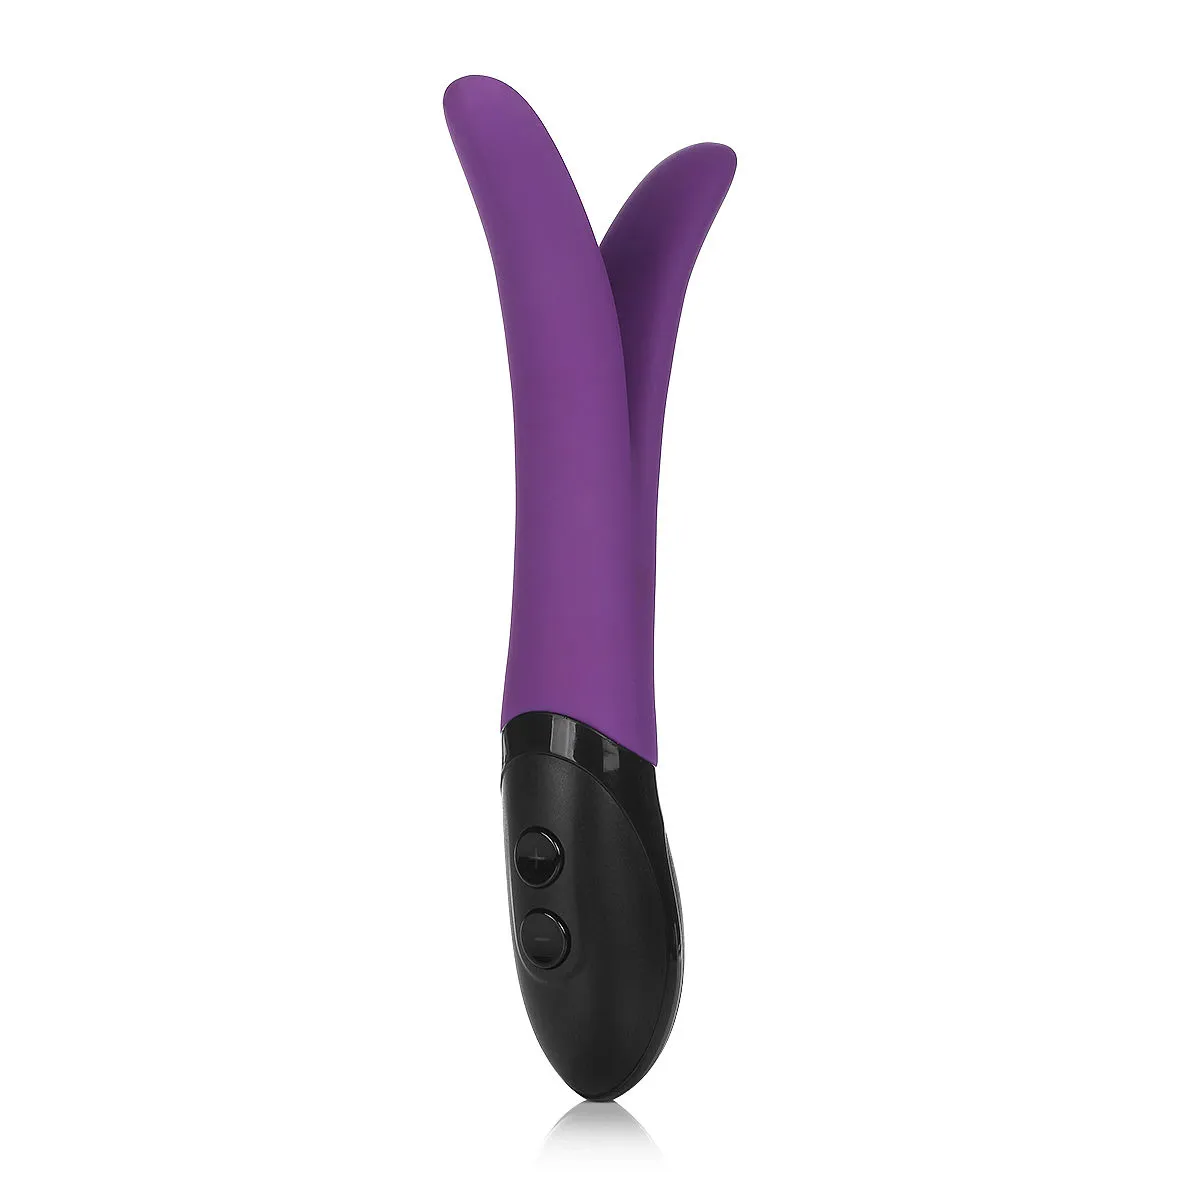 Vibromasseur gode étanche violet masseur multivitesse point G jouet sexuel femme adulte # R28